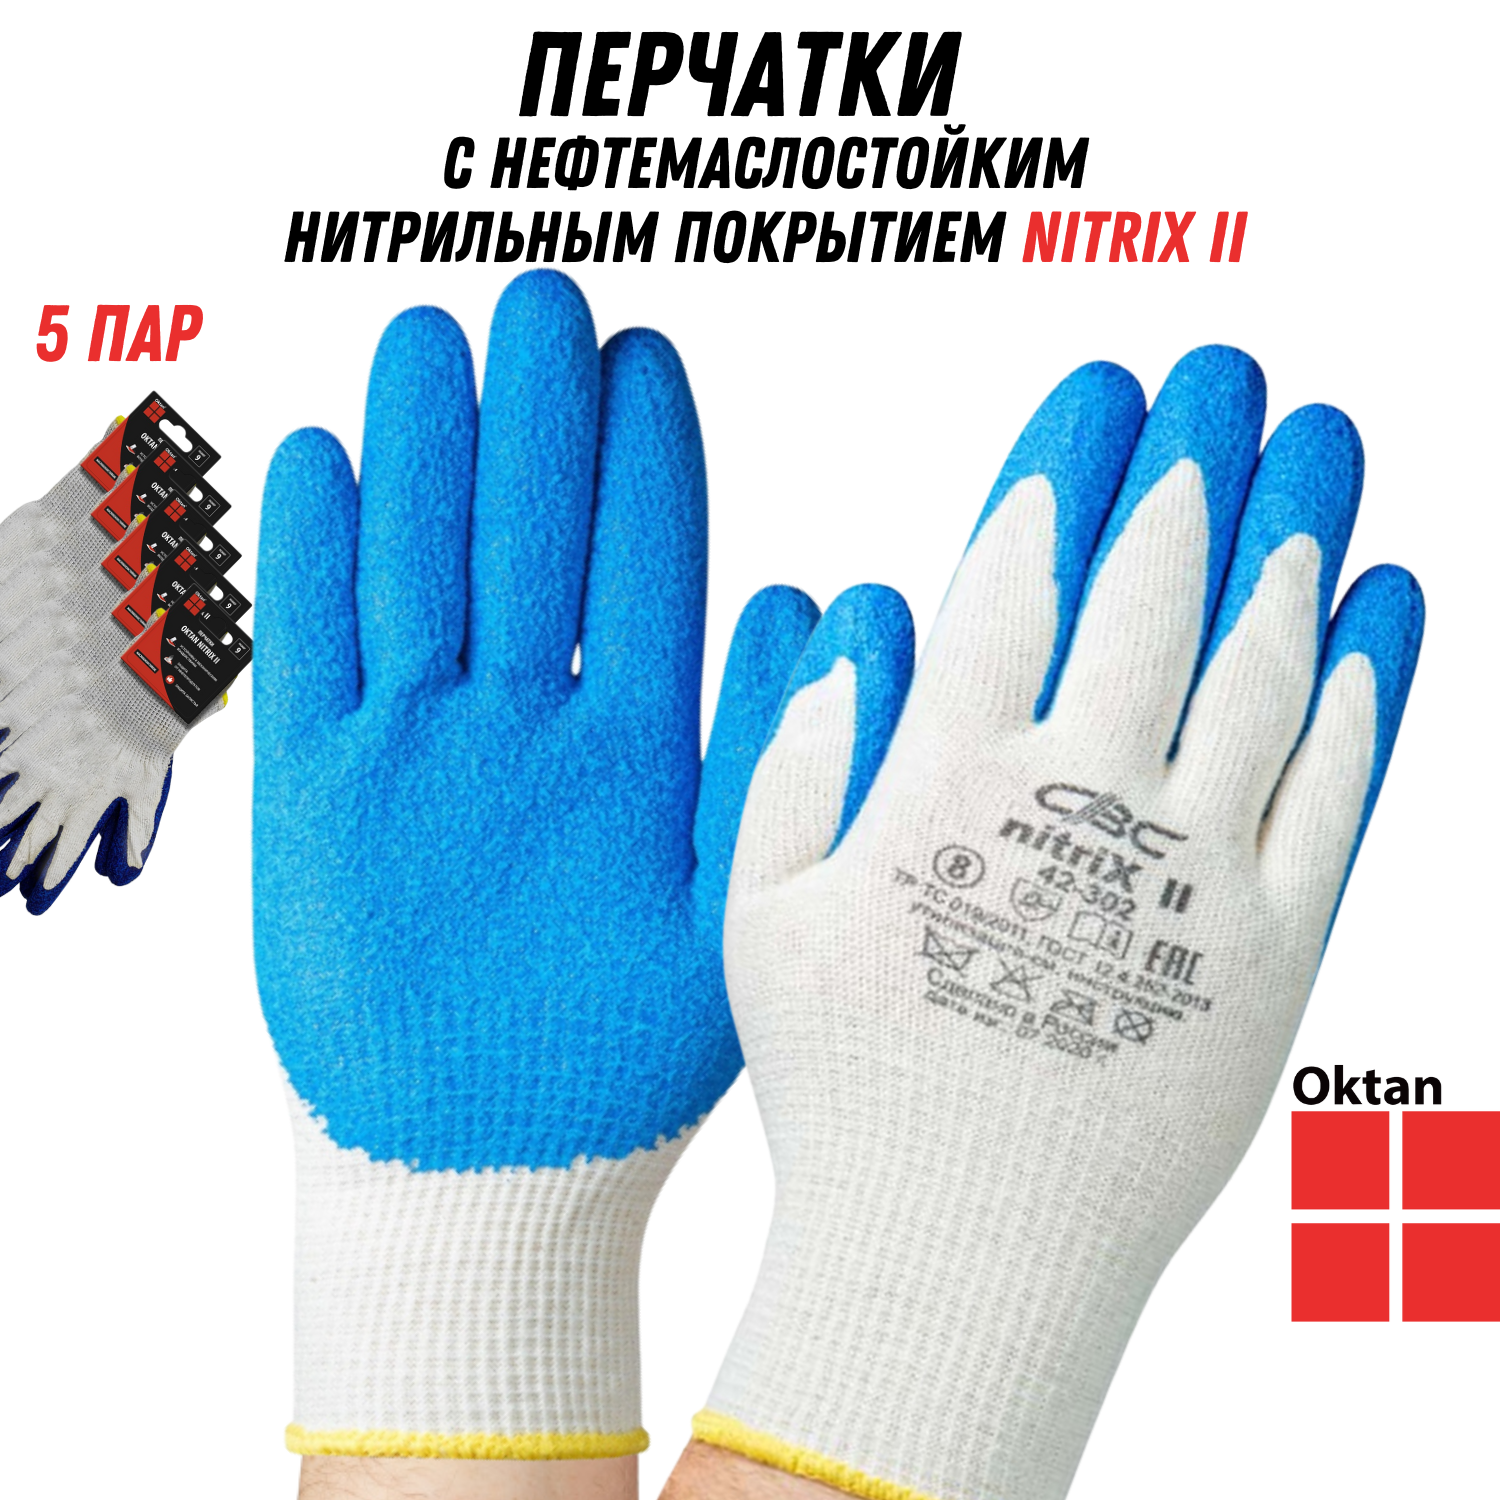 Перчатки рабочие Oktan NITRIX II А5-01-21-05-ММ белые с синим размер 9, 5 пар